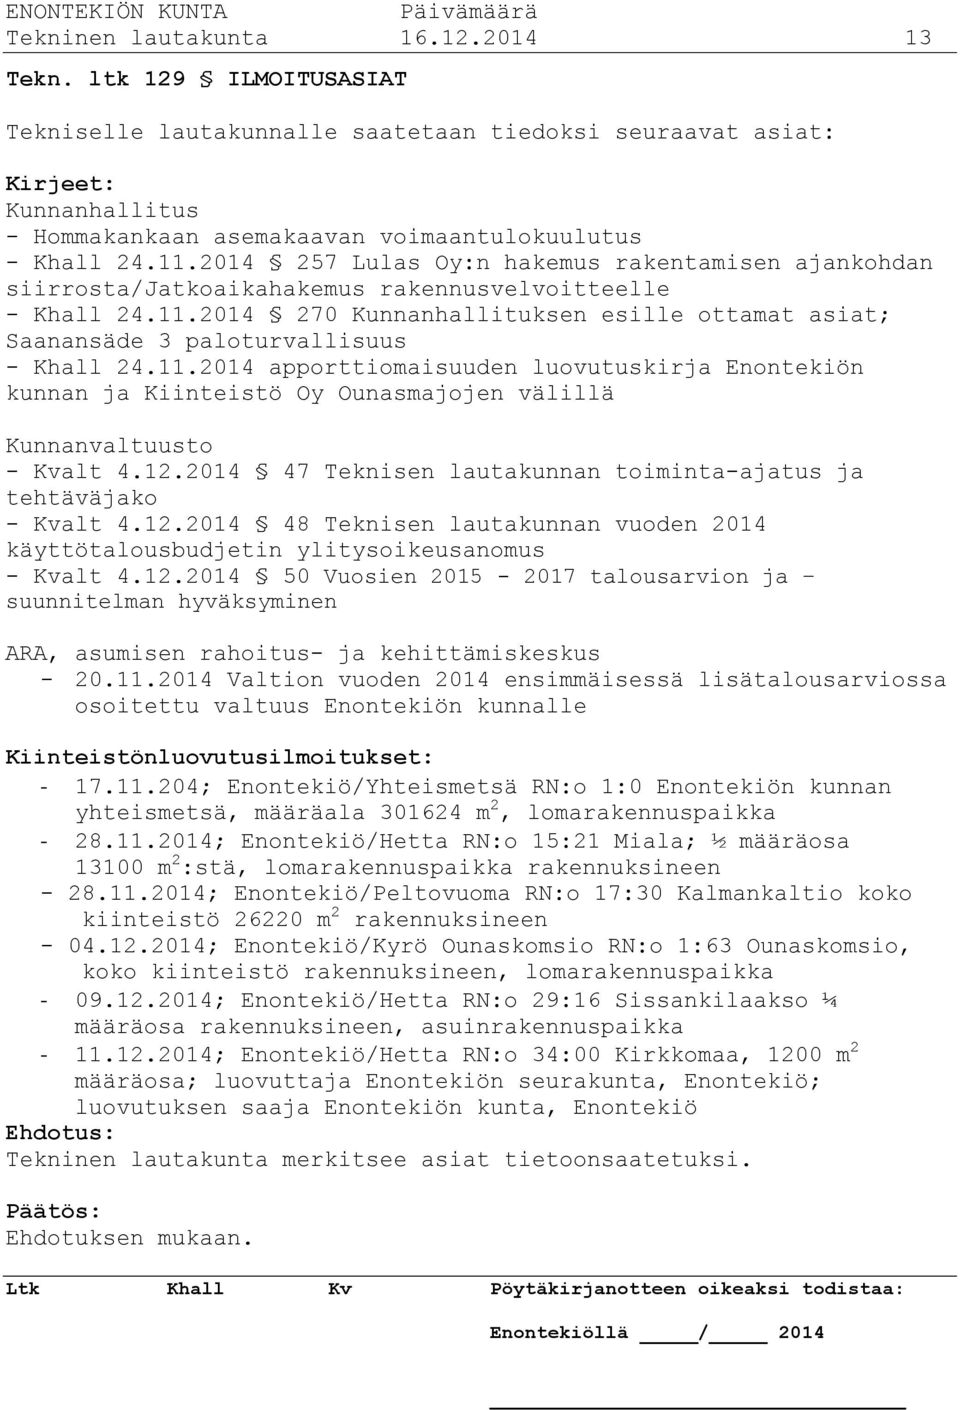 2014 257 Lulas Oy:n hakemus rakentamisen ajankohdan siirrosta/jatkoaikahakemus rakennusvelvoitteelle - Khall 24.11.